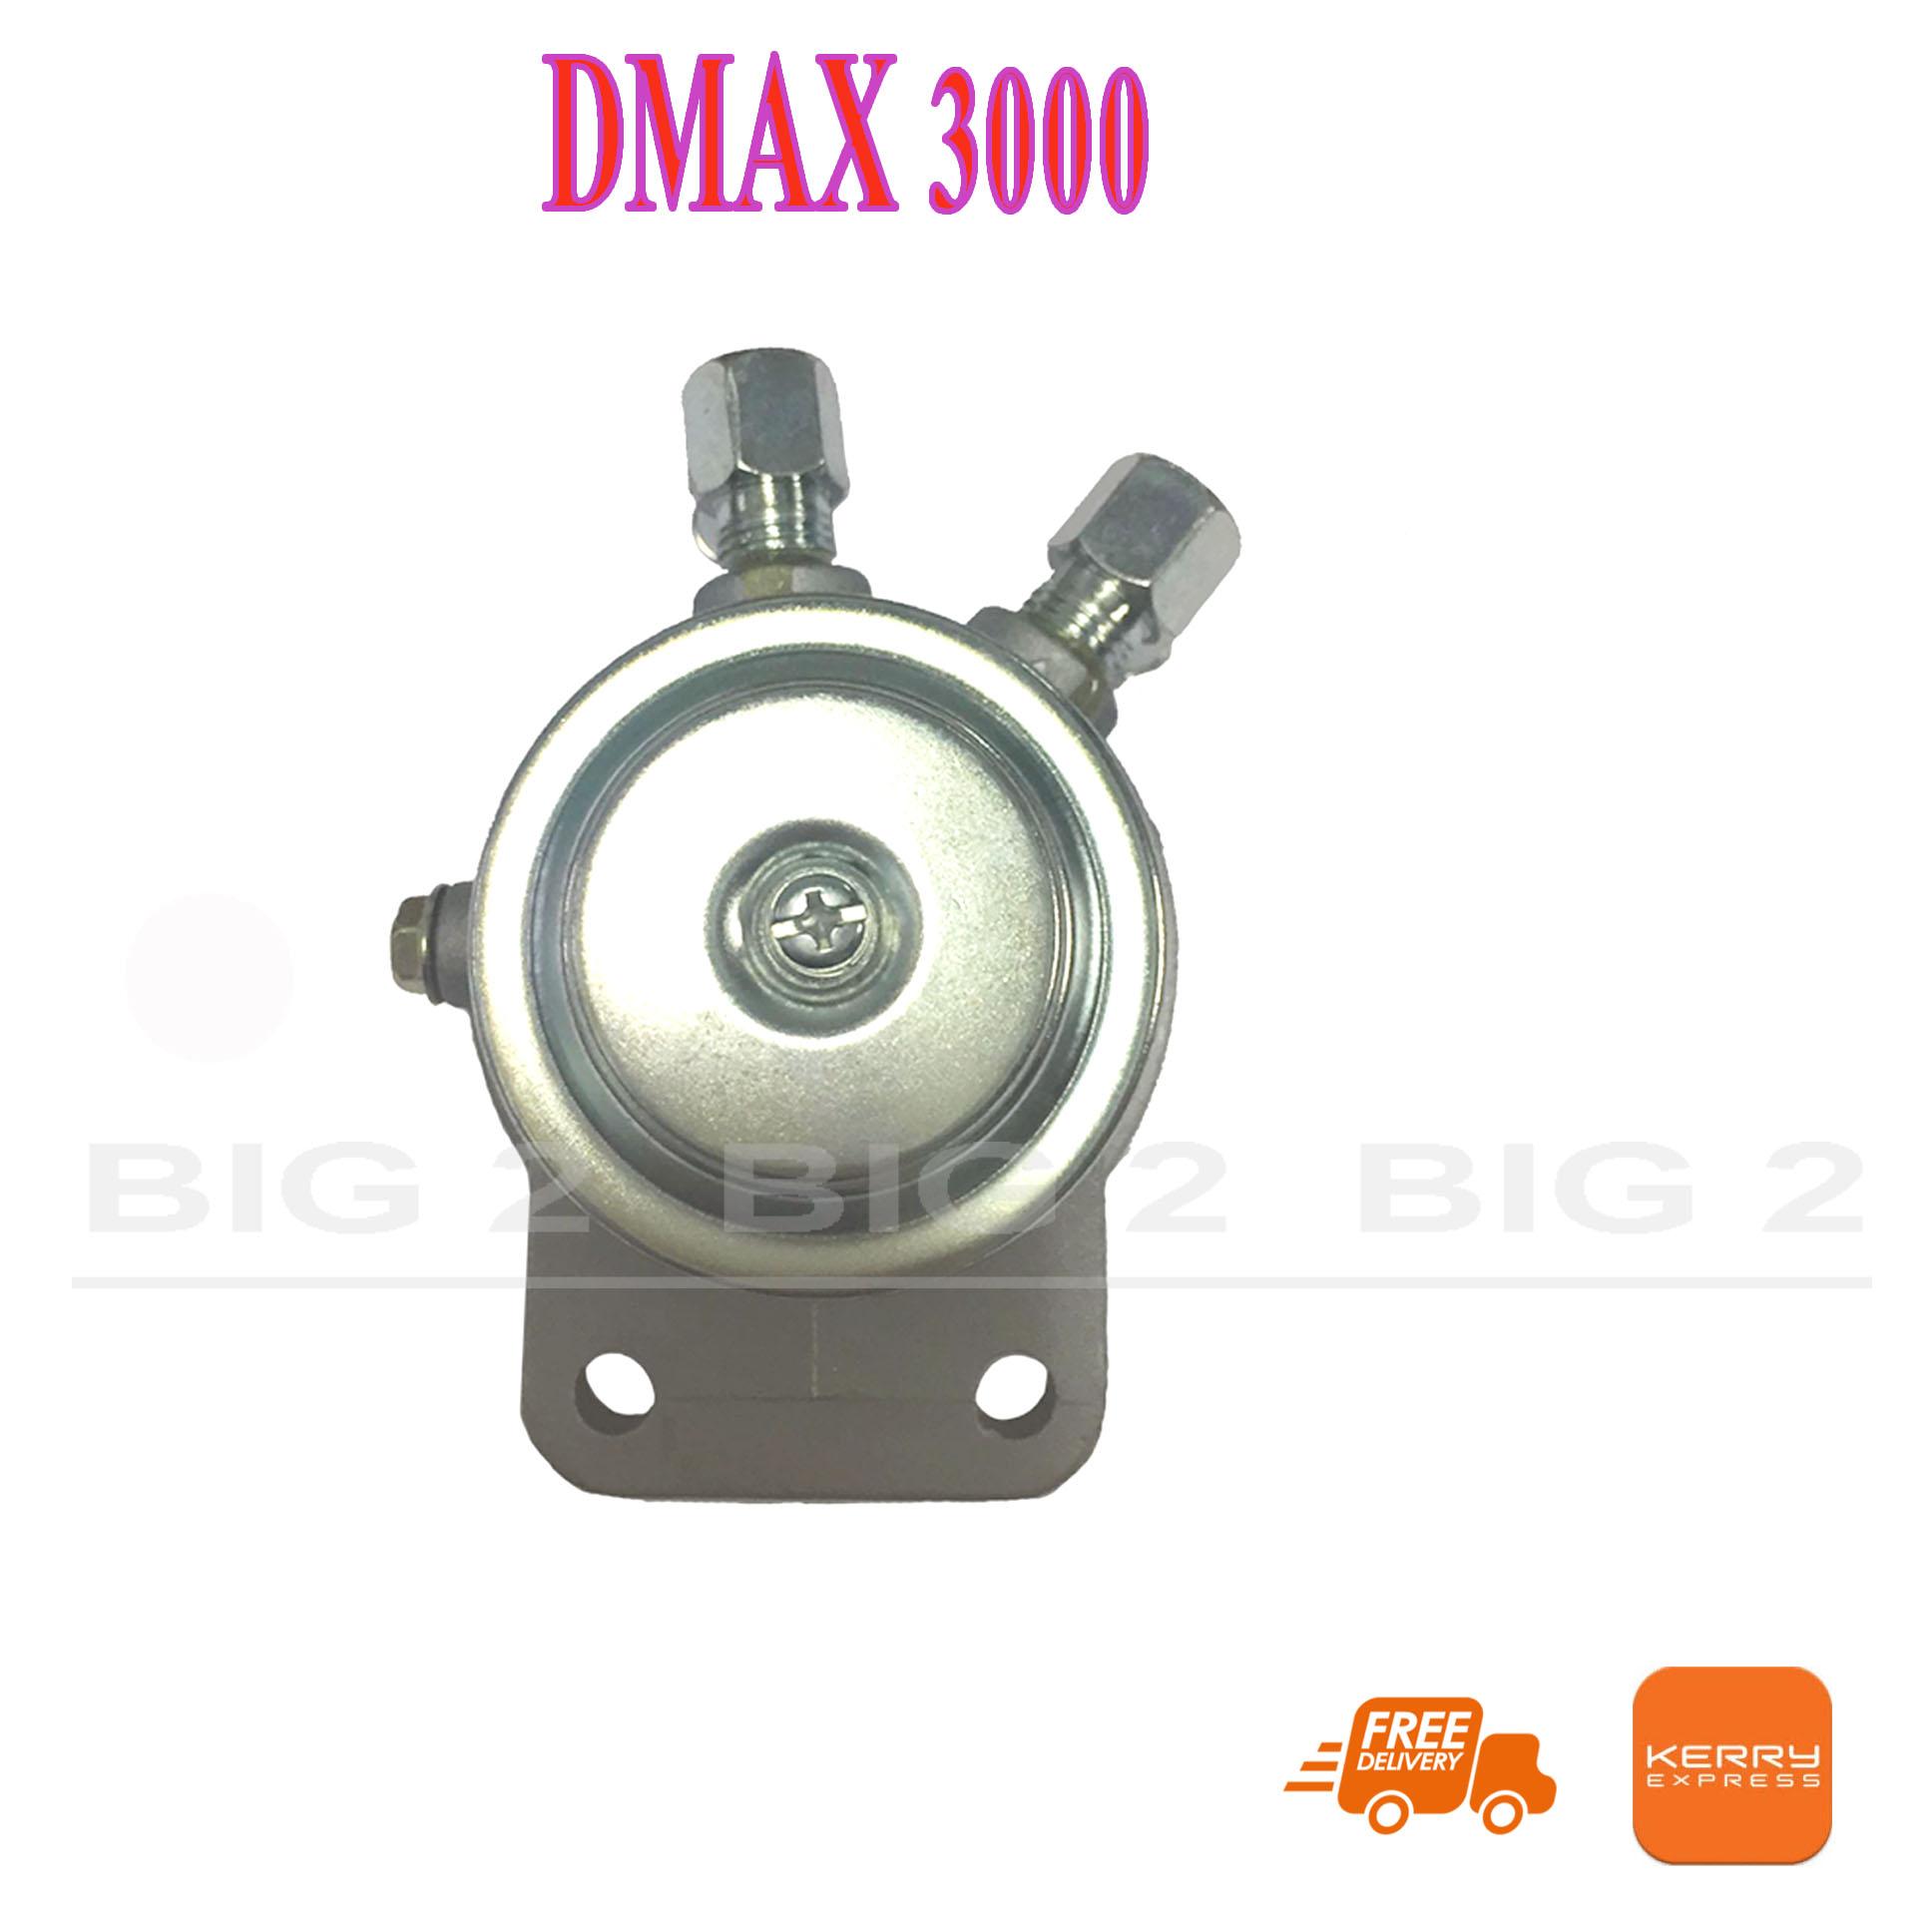 ขากรองโซล่า ขากรองแย็ก ISUZU DMAX 3000 (1อันต่อกล่อง)